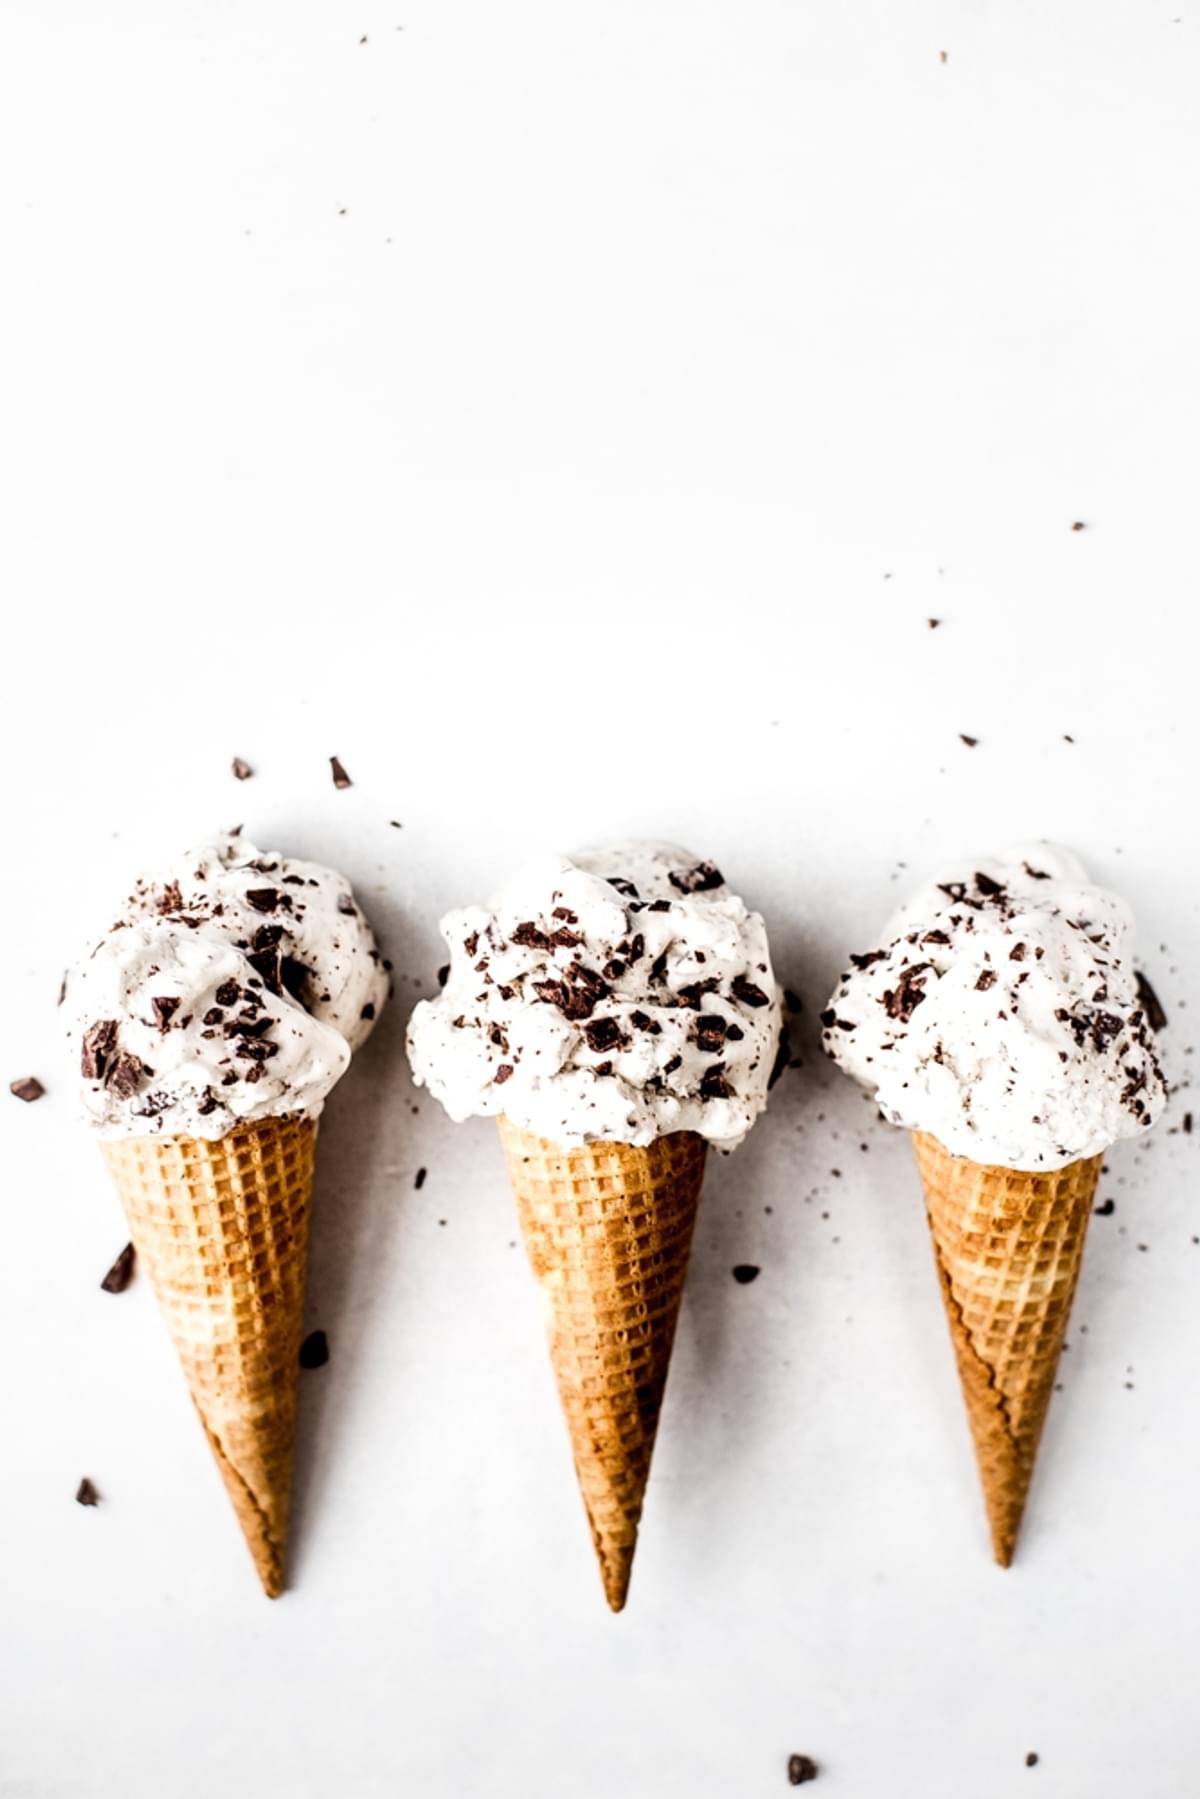 three ice cream cones filled with Vegan Mint Chip Ice Cream